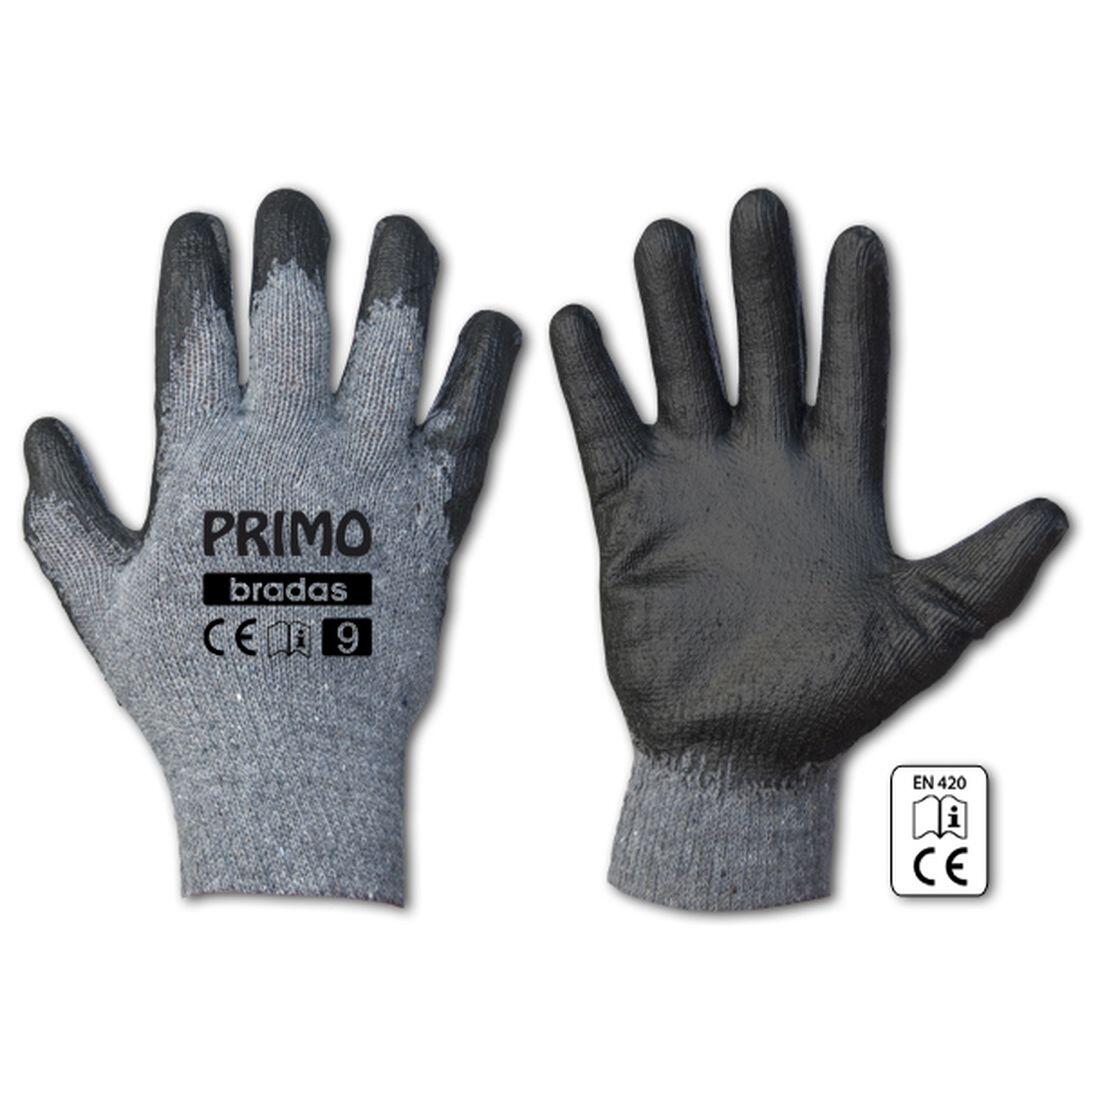 rukavice PRIMO latex  9 0.07 Kg MAXMIX Sklad14 715683 373